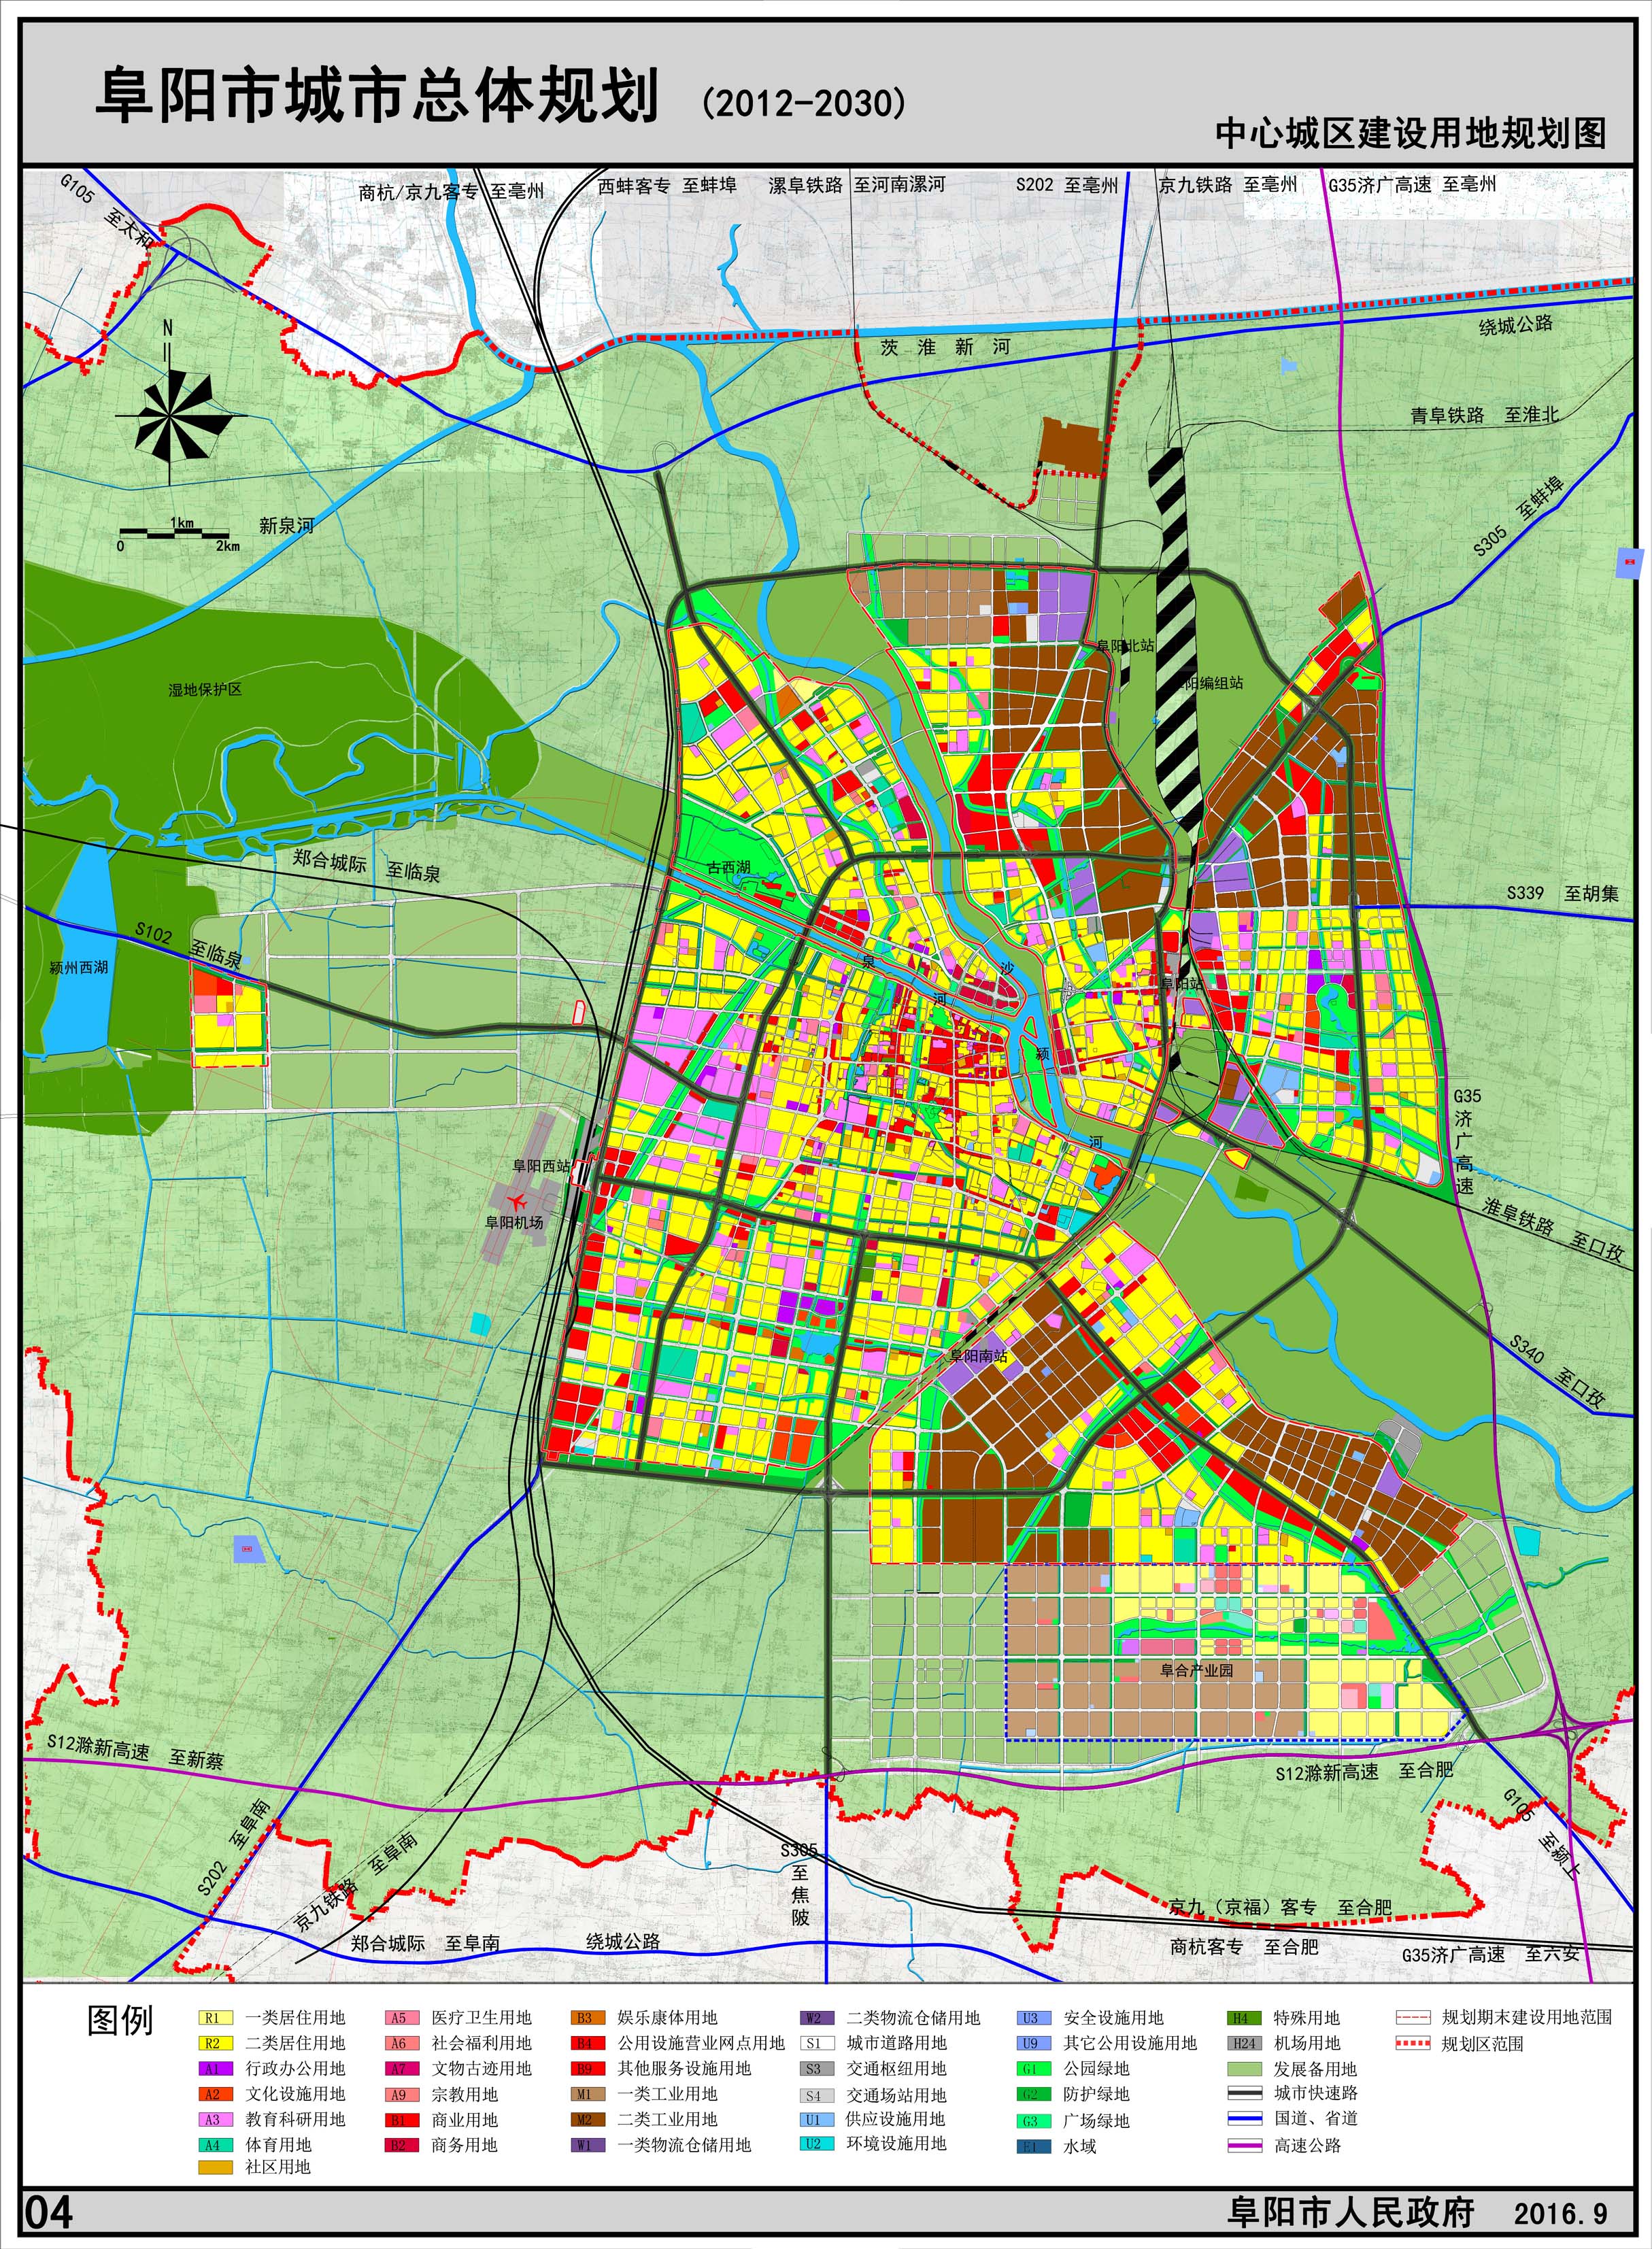 7.中心城区近期建设用地规划图